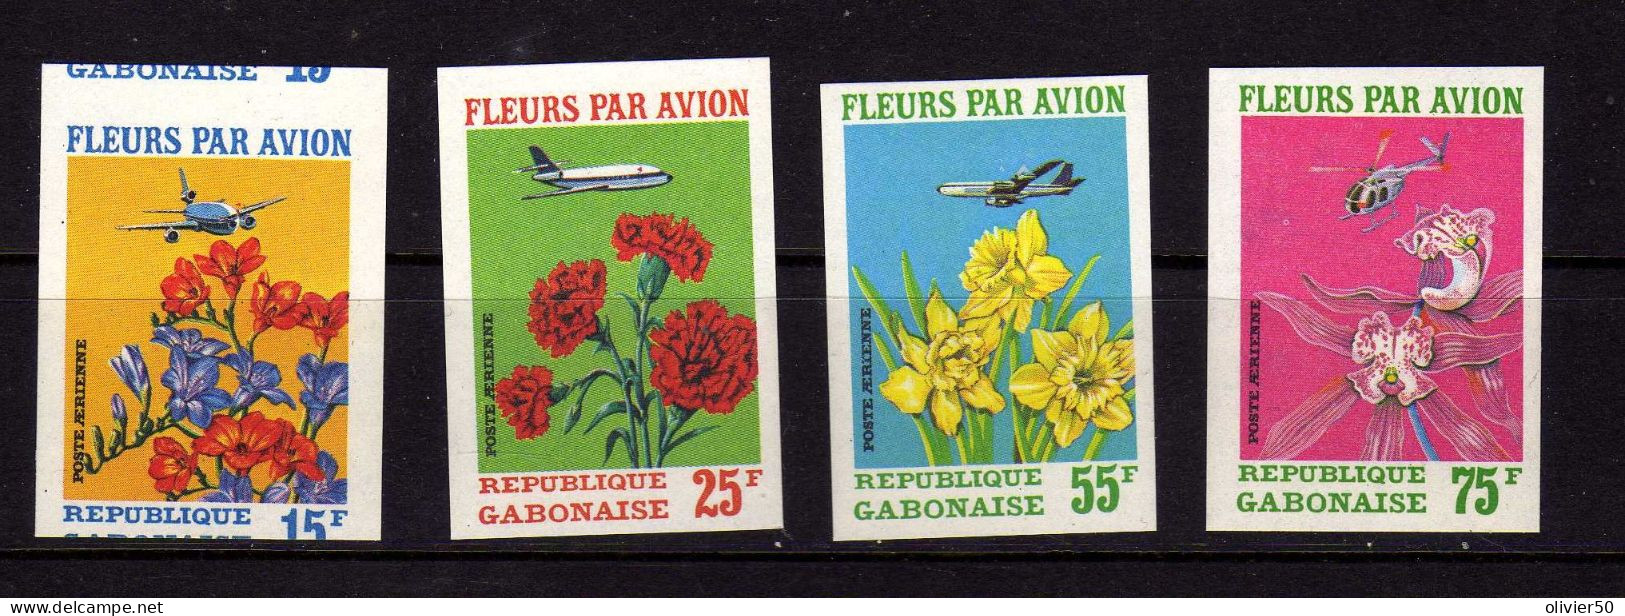 Gabon -P A - Fleurs Par Avion -  Neufs** - MNH  - ND - Gabon